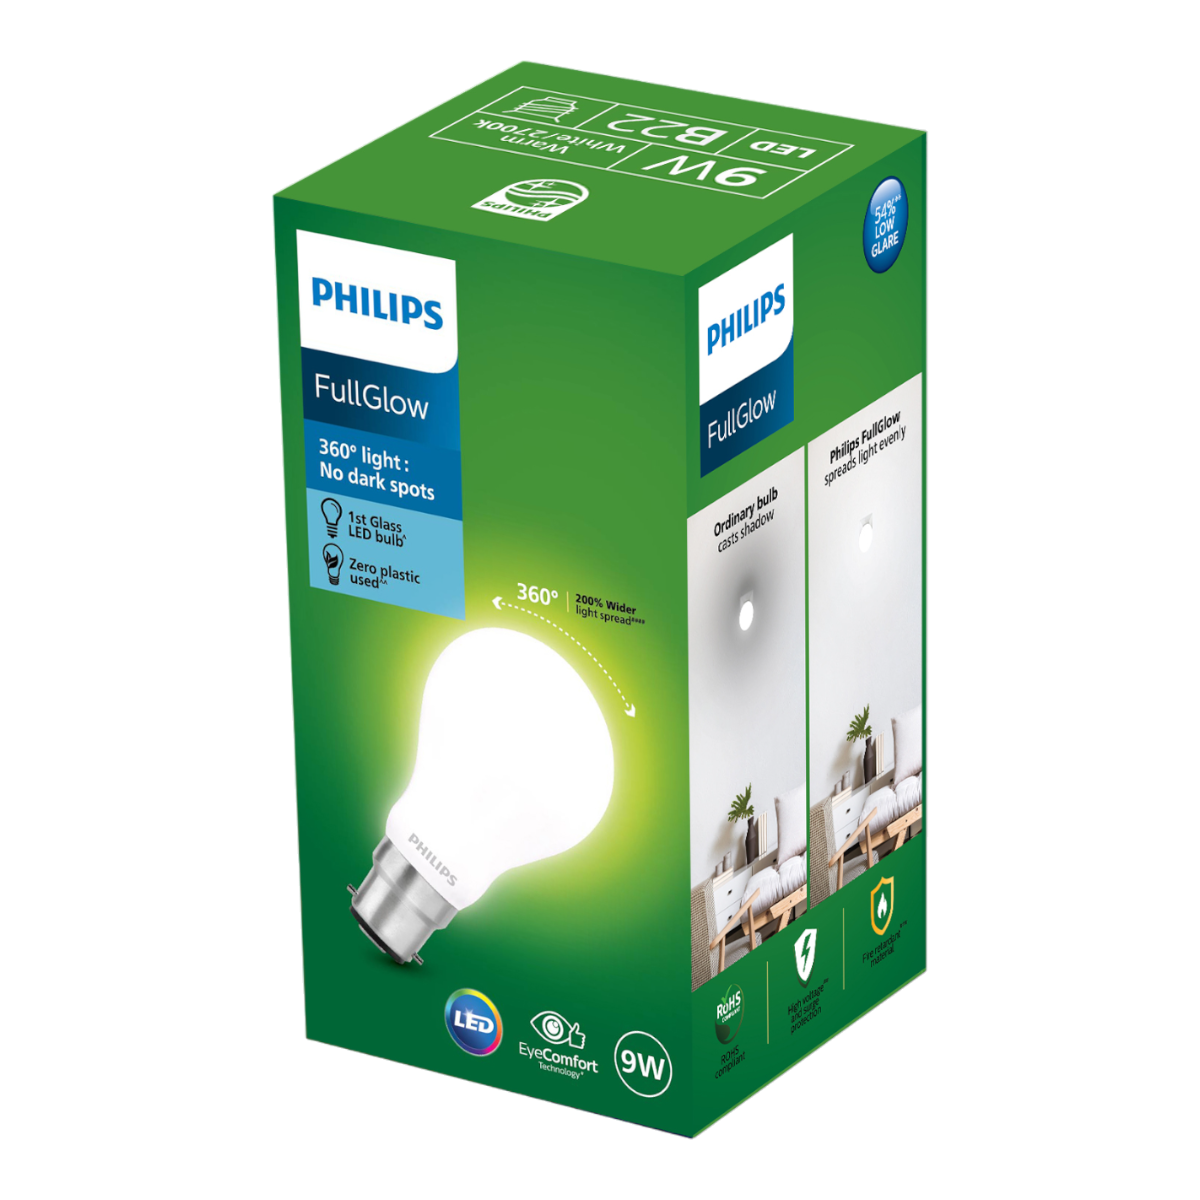 Philips Full Glow LED Bulb